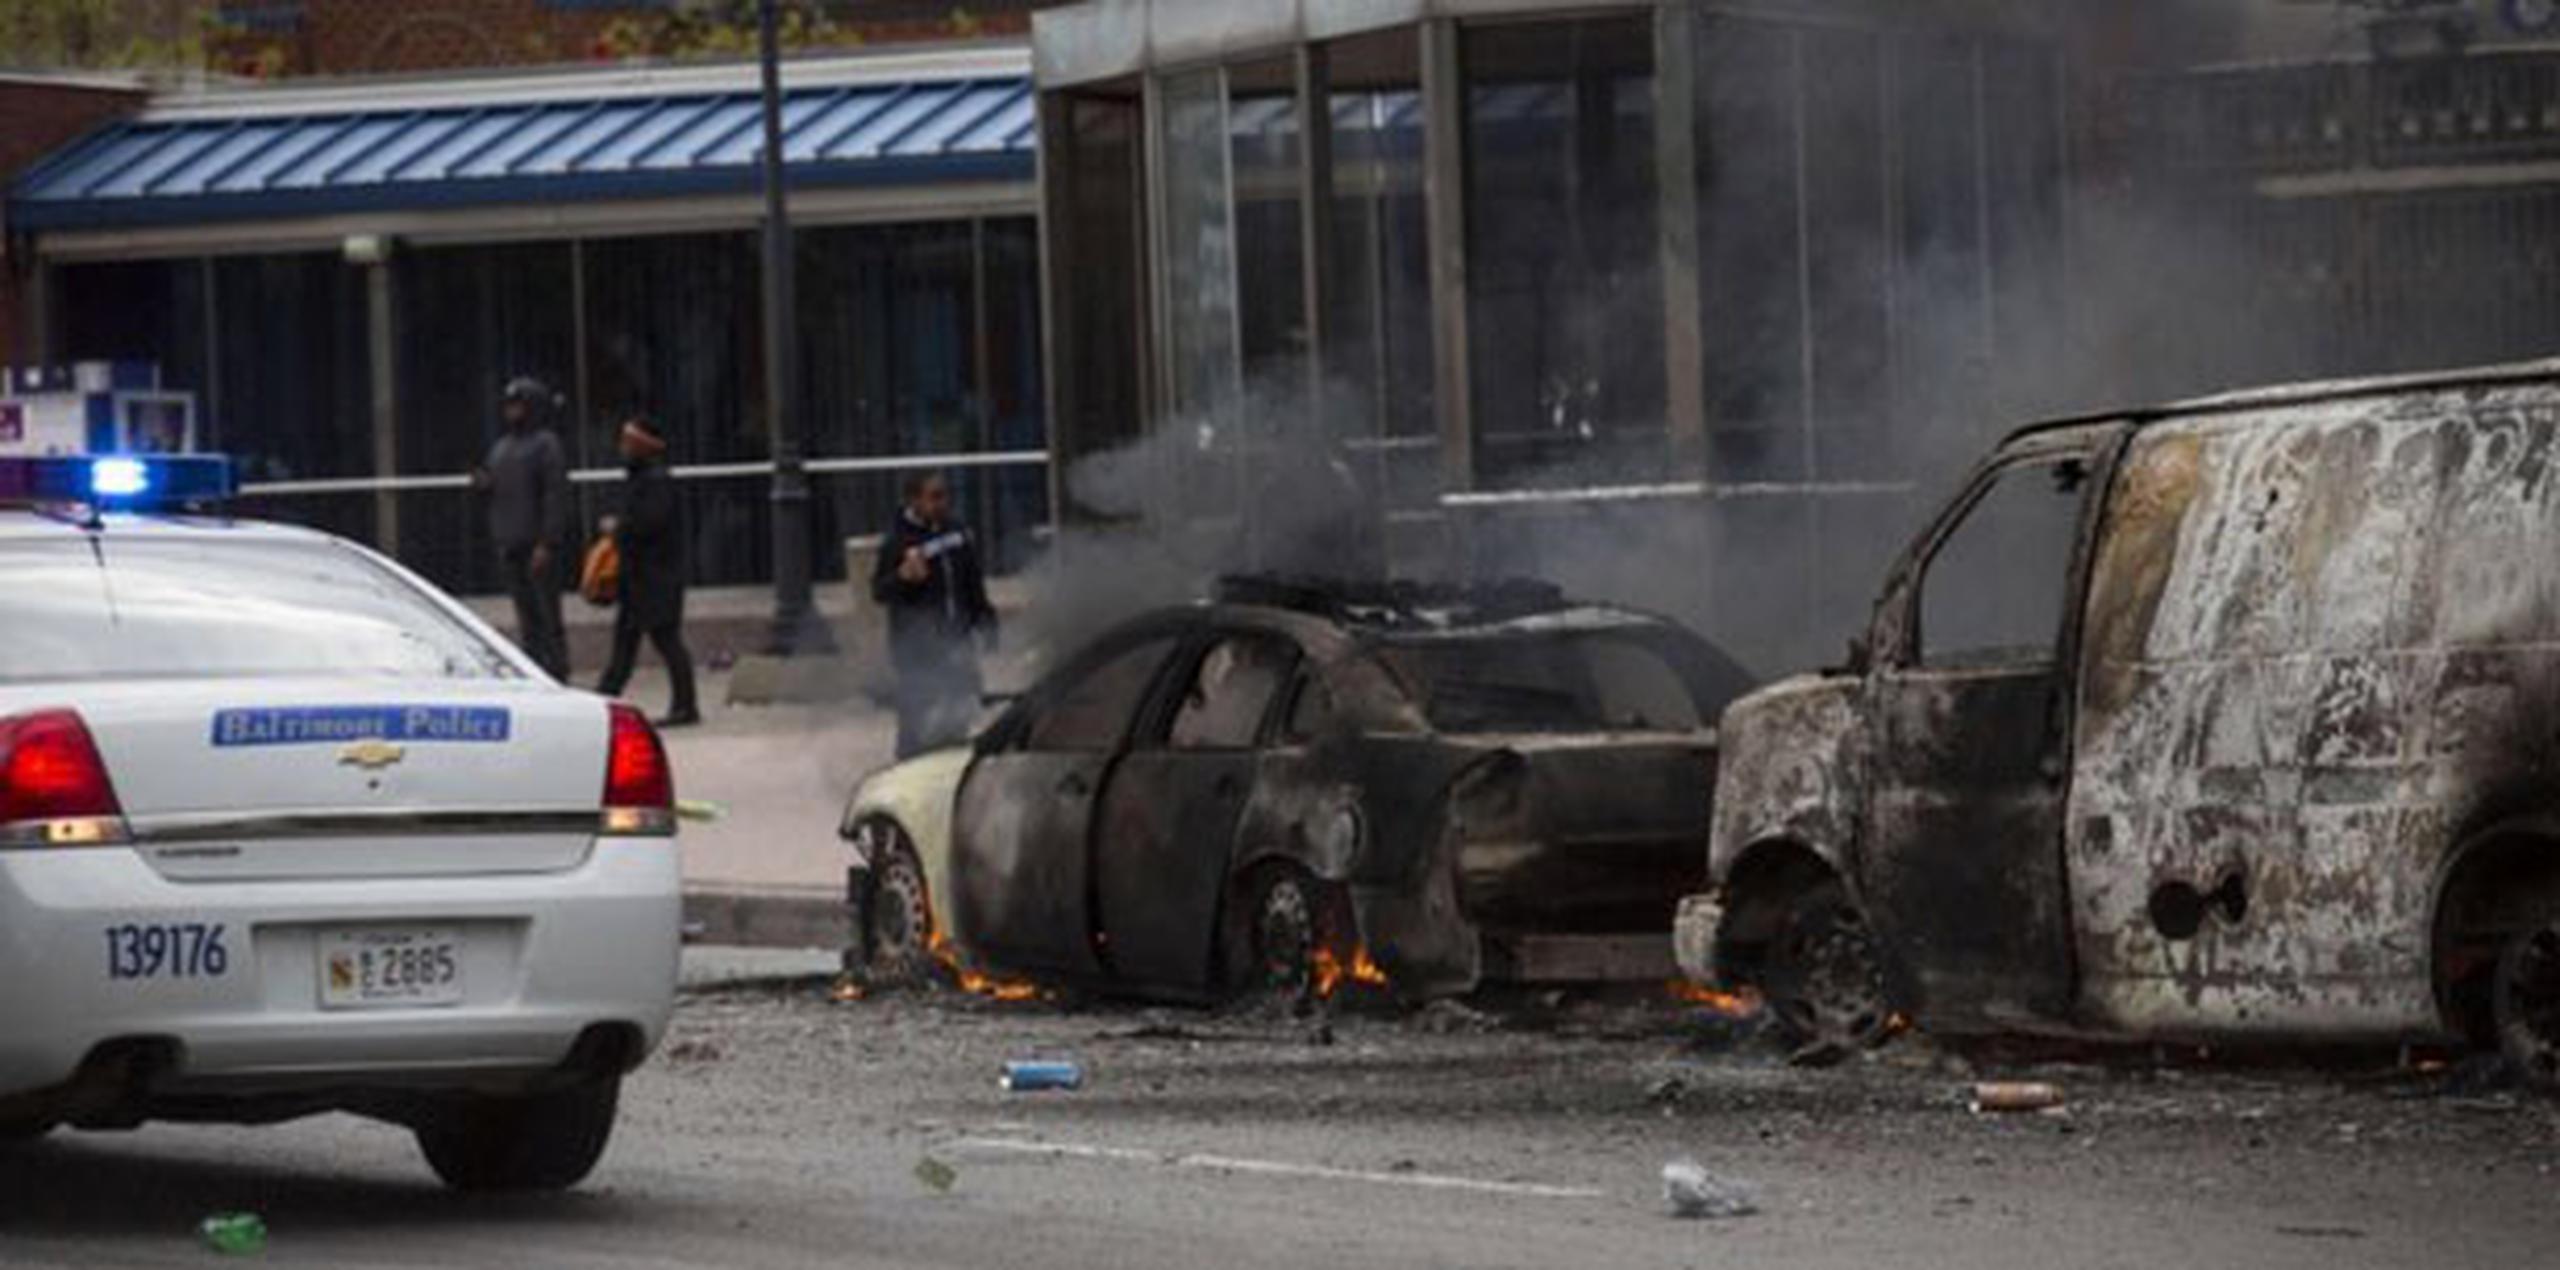 Los manifestantes han incendiado vehículos y edificios. (Drew Angerer/Getty Images/AFP)